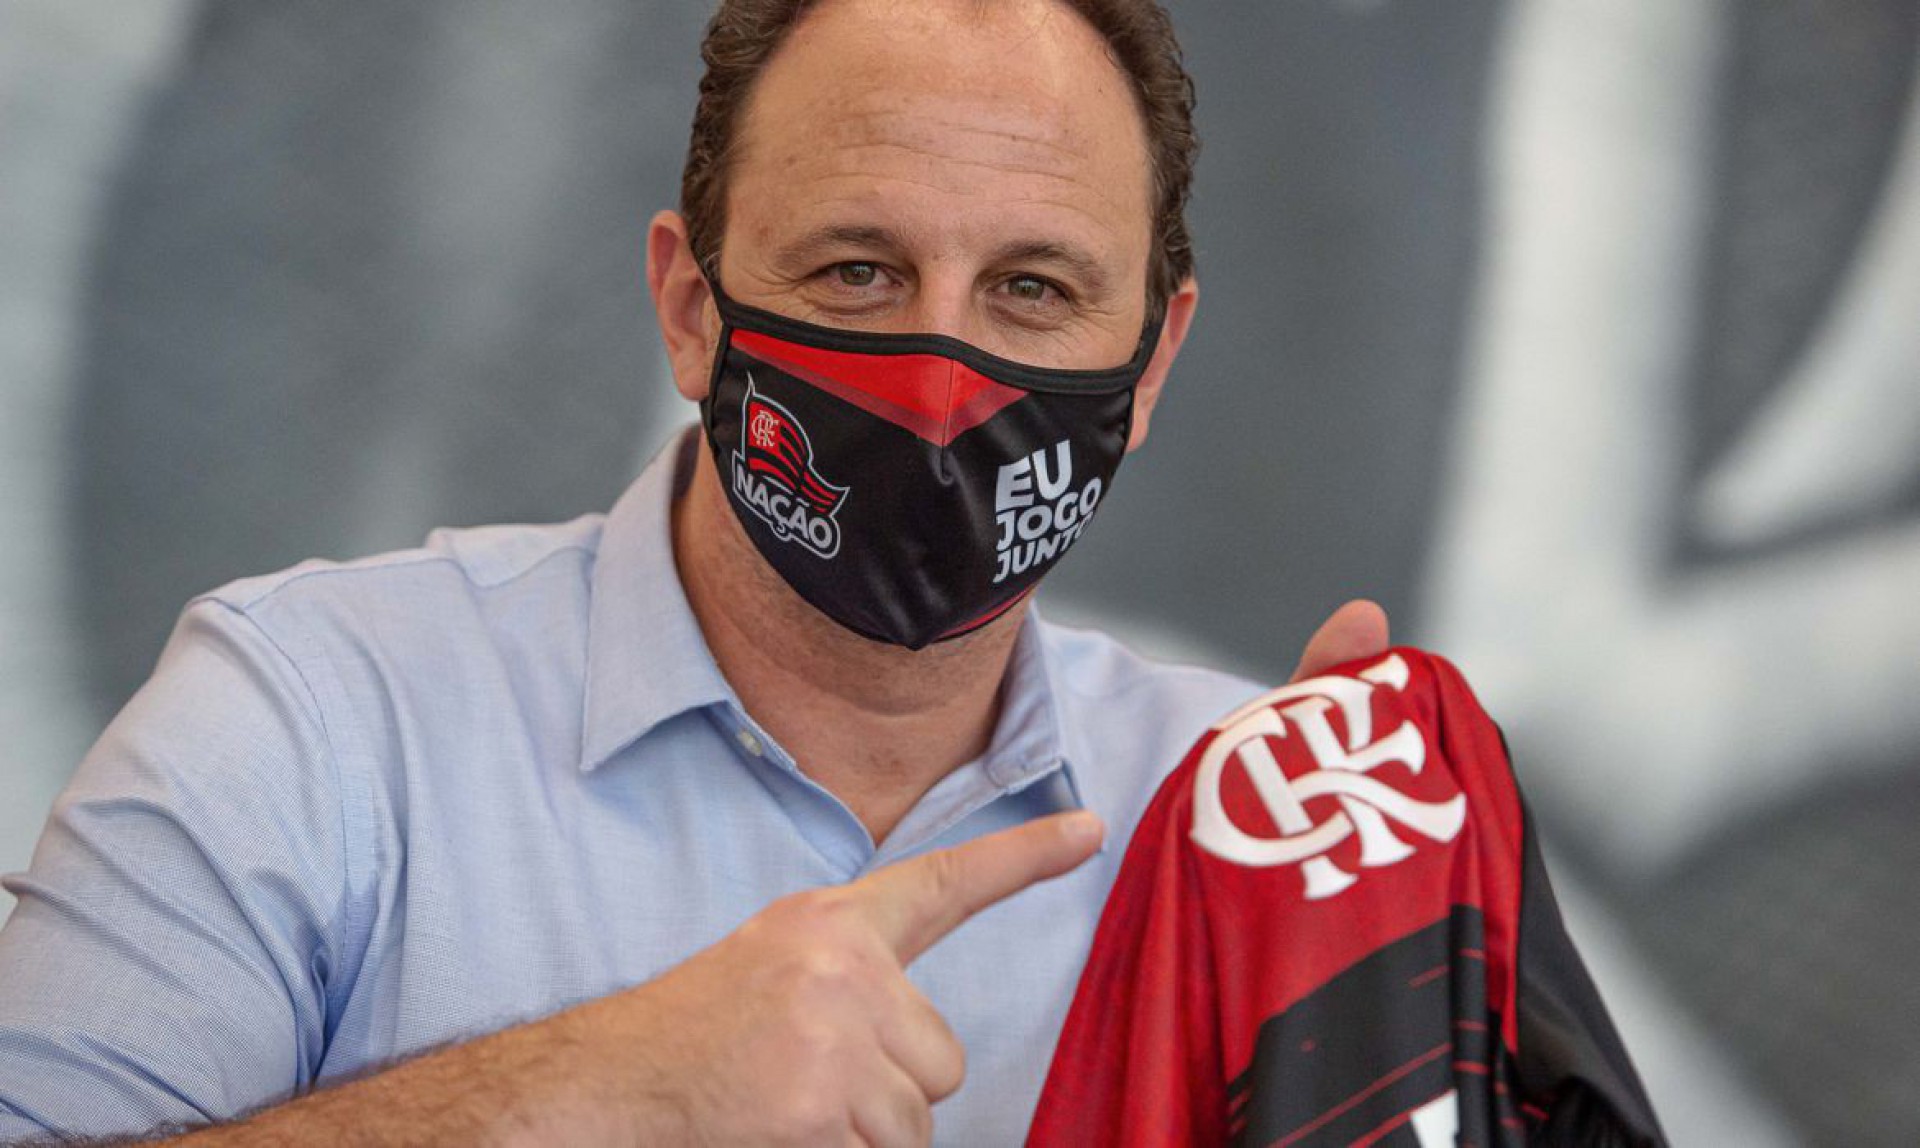 Flamengo x Maringá: veja onde assistir AO VIVO e de GRAÇA!